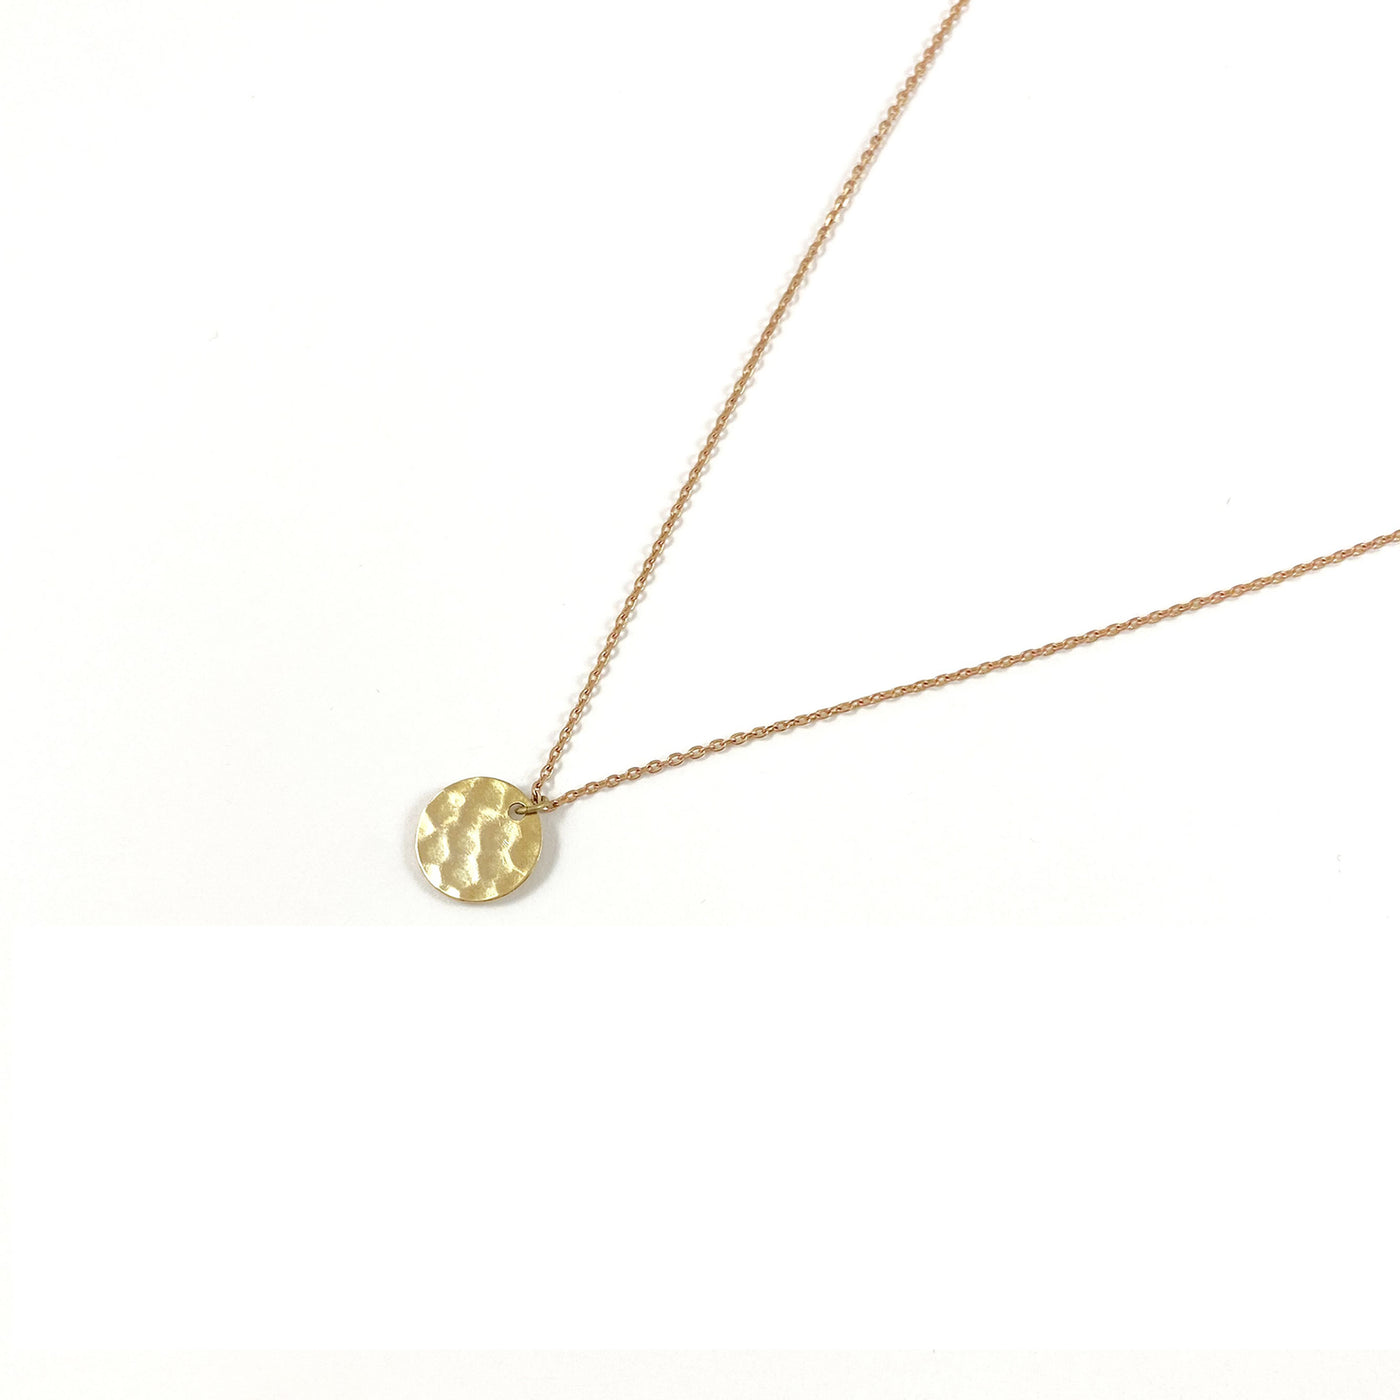 TEA - Brass necklace